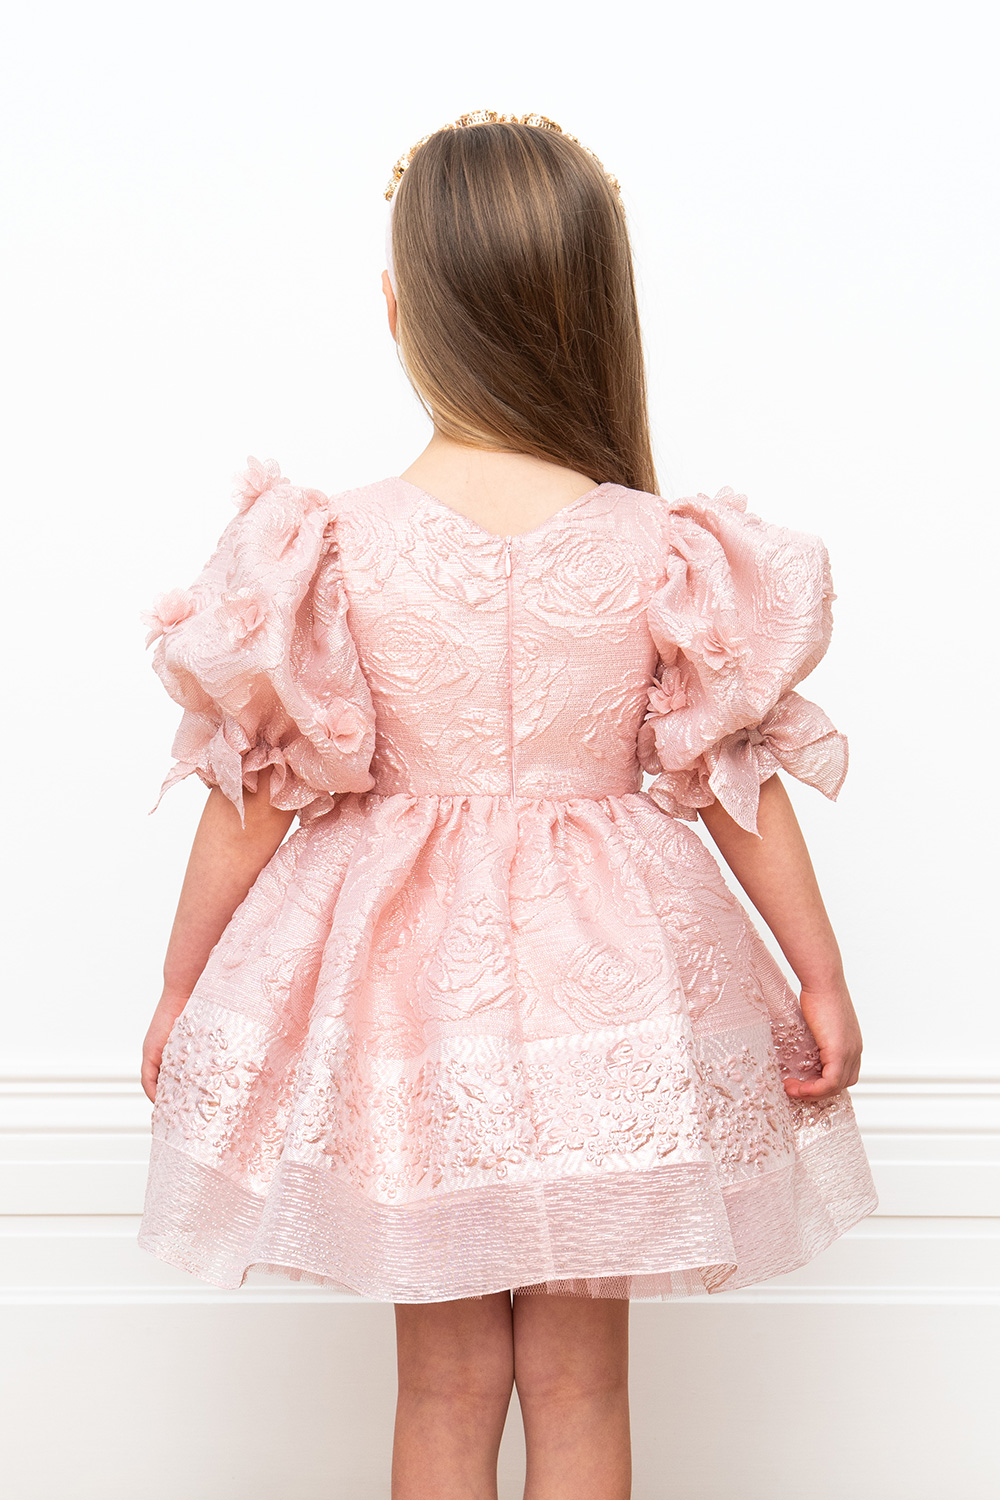 Top 30 Cinderella Wedding Dress - The Wedding Scoop